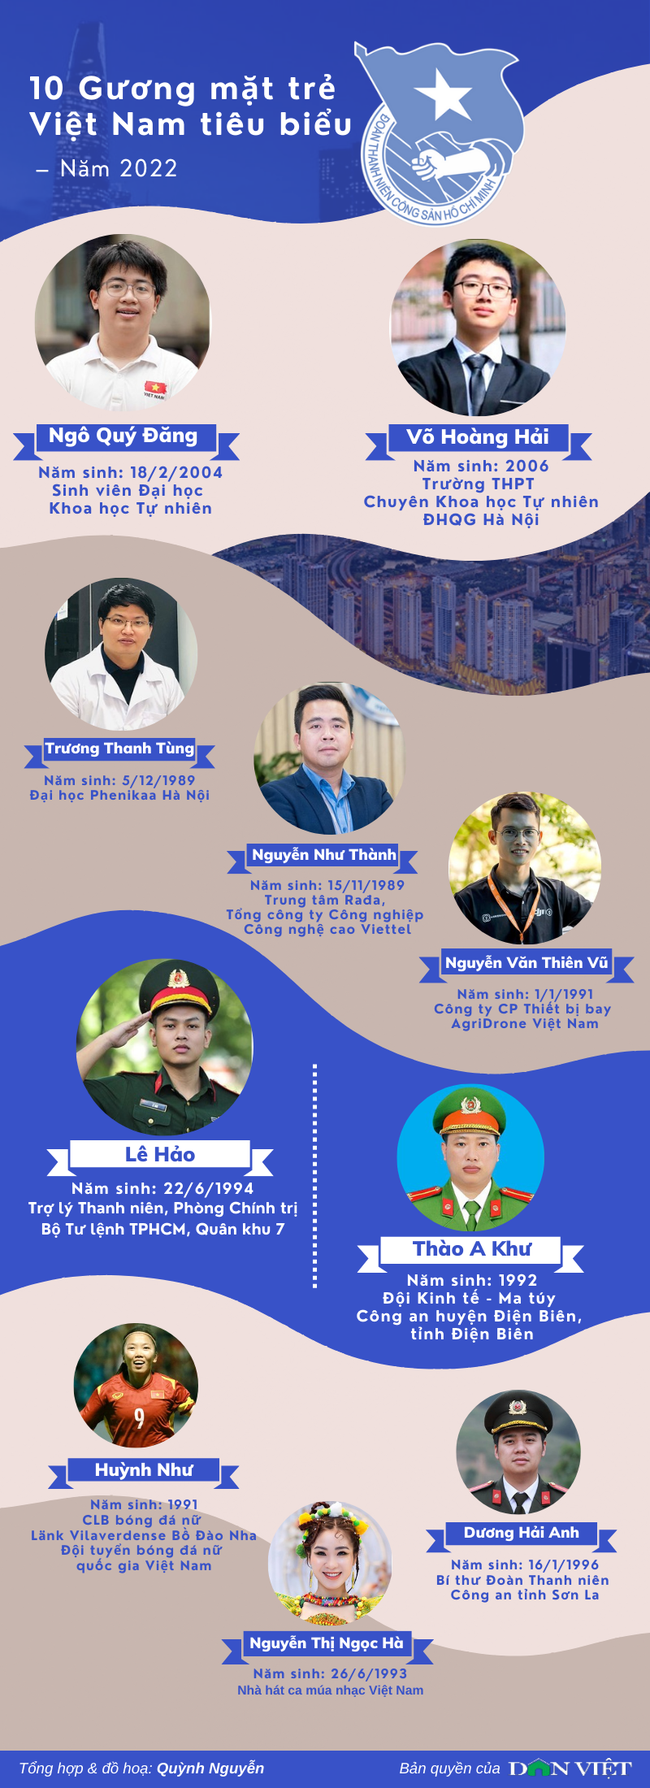 Infographic 10 Gương mặt trẻ Việt Nam tiêu biểu năm 2022 - Ảnh 1.